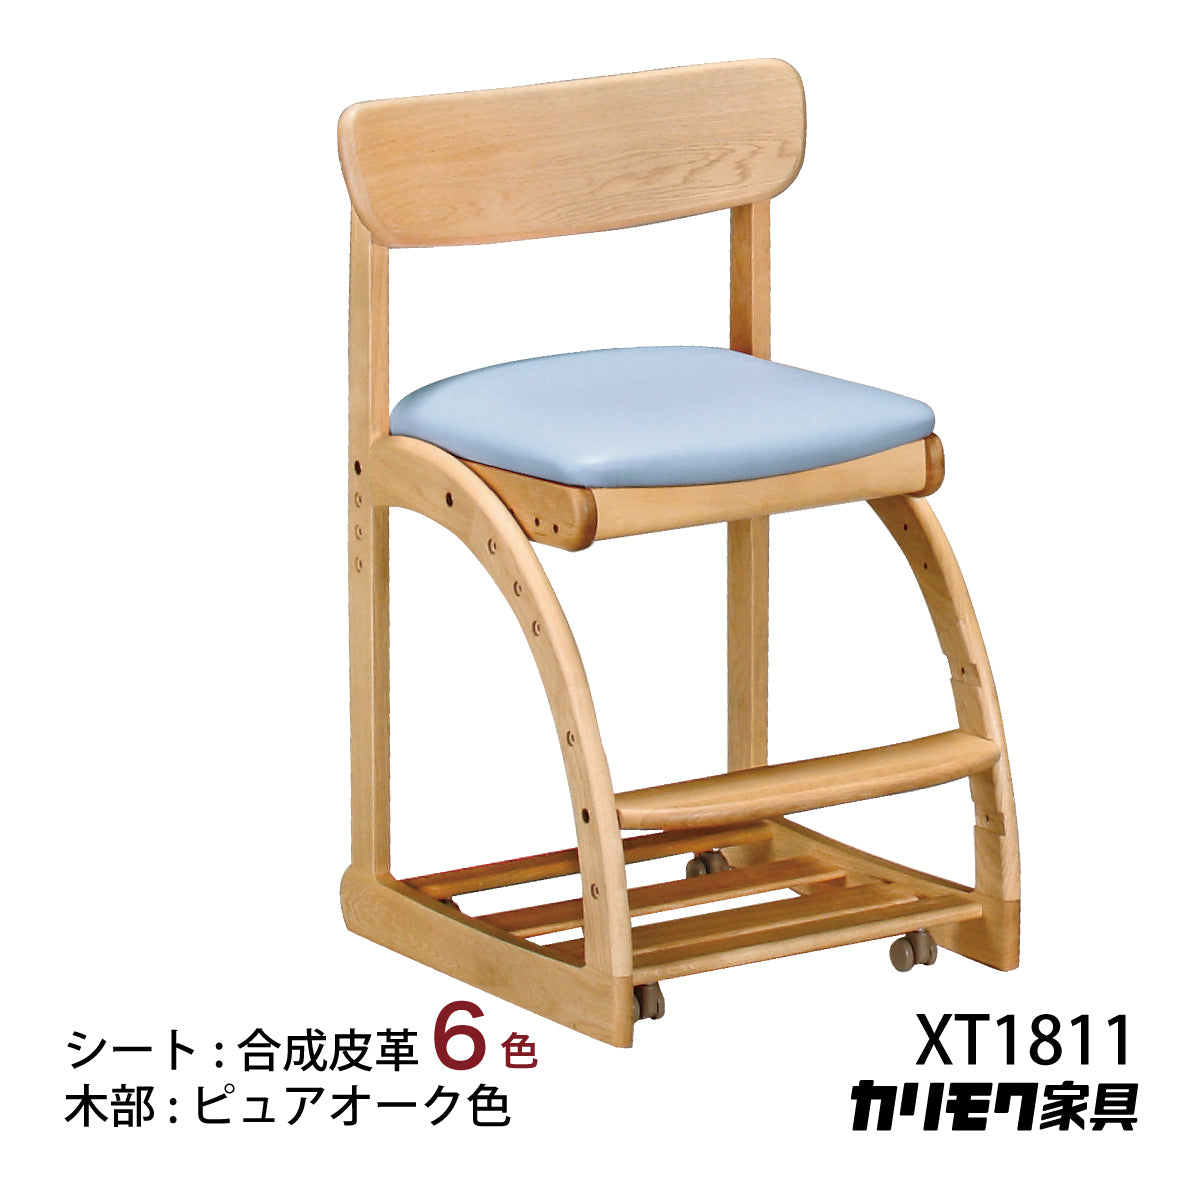 カリモク 学習椅子 XT1811 ピュアオーク色 デスクチェア 子供椅子 